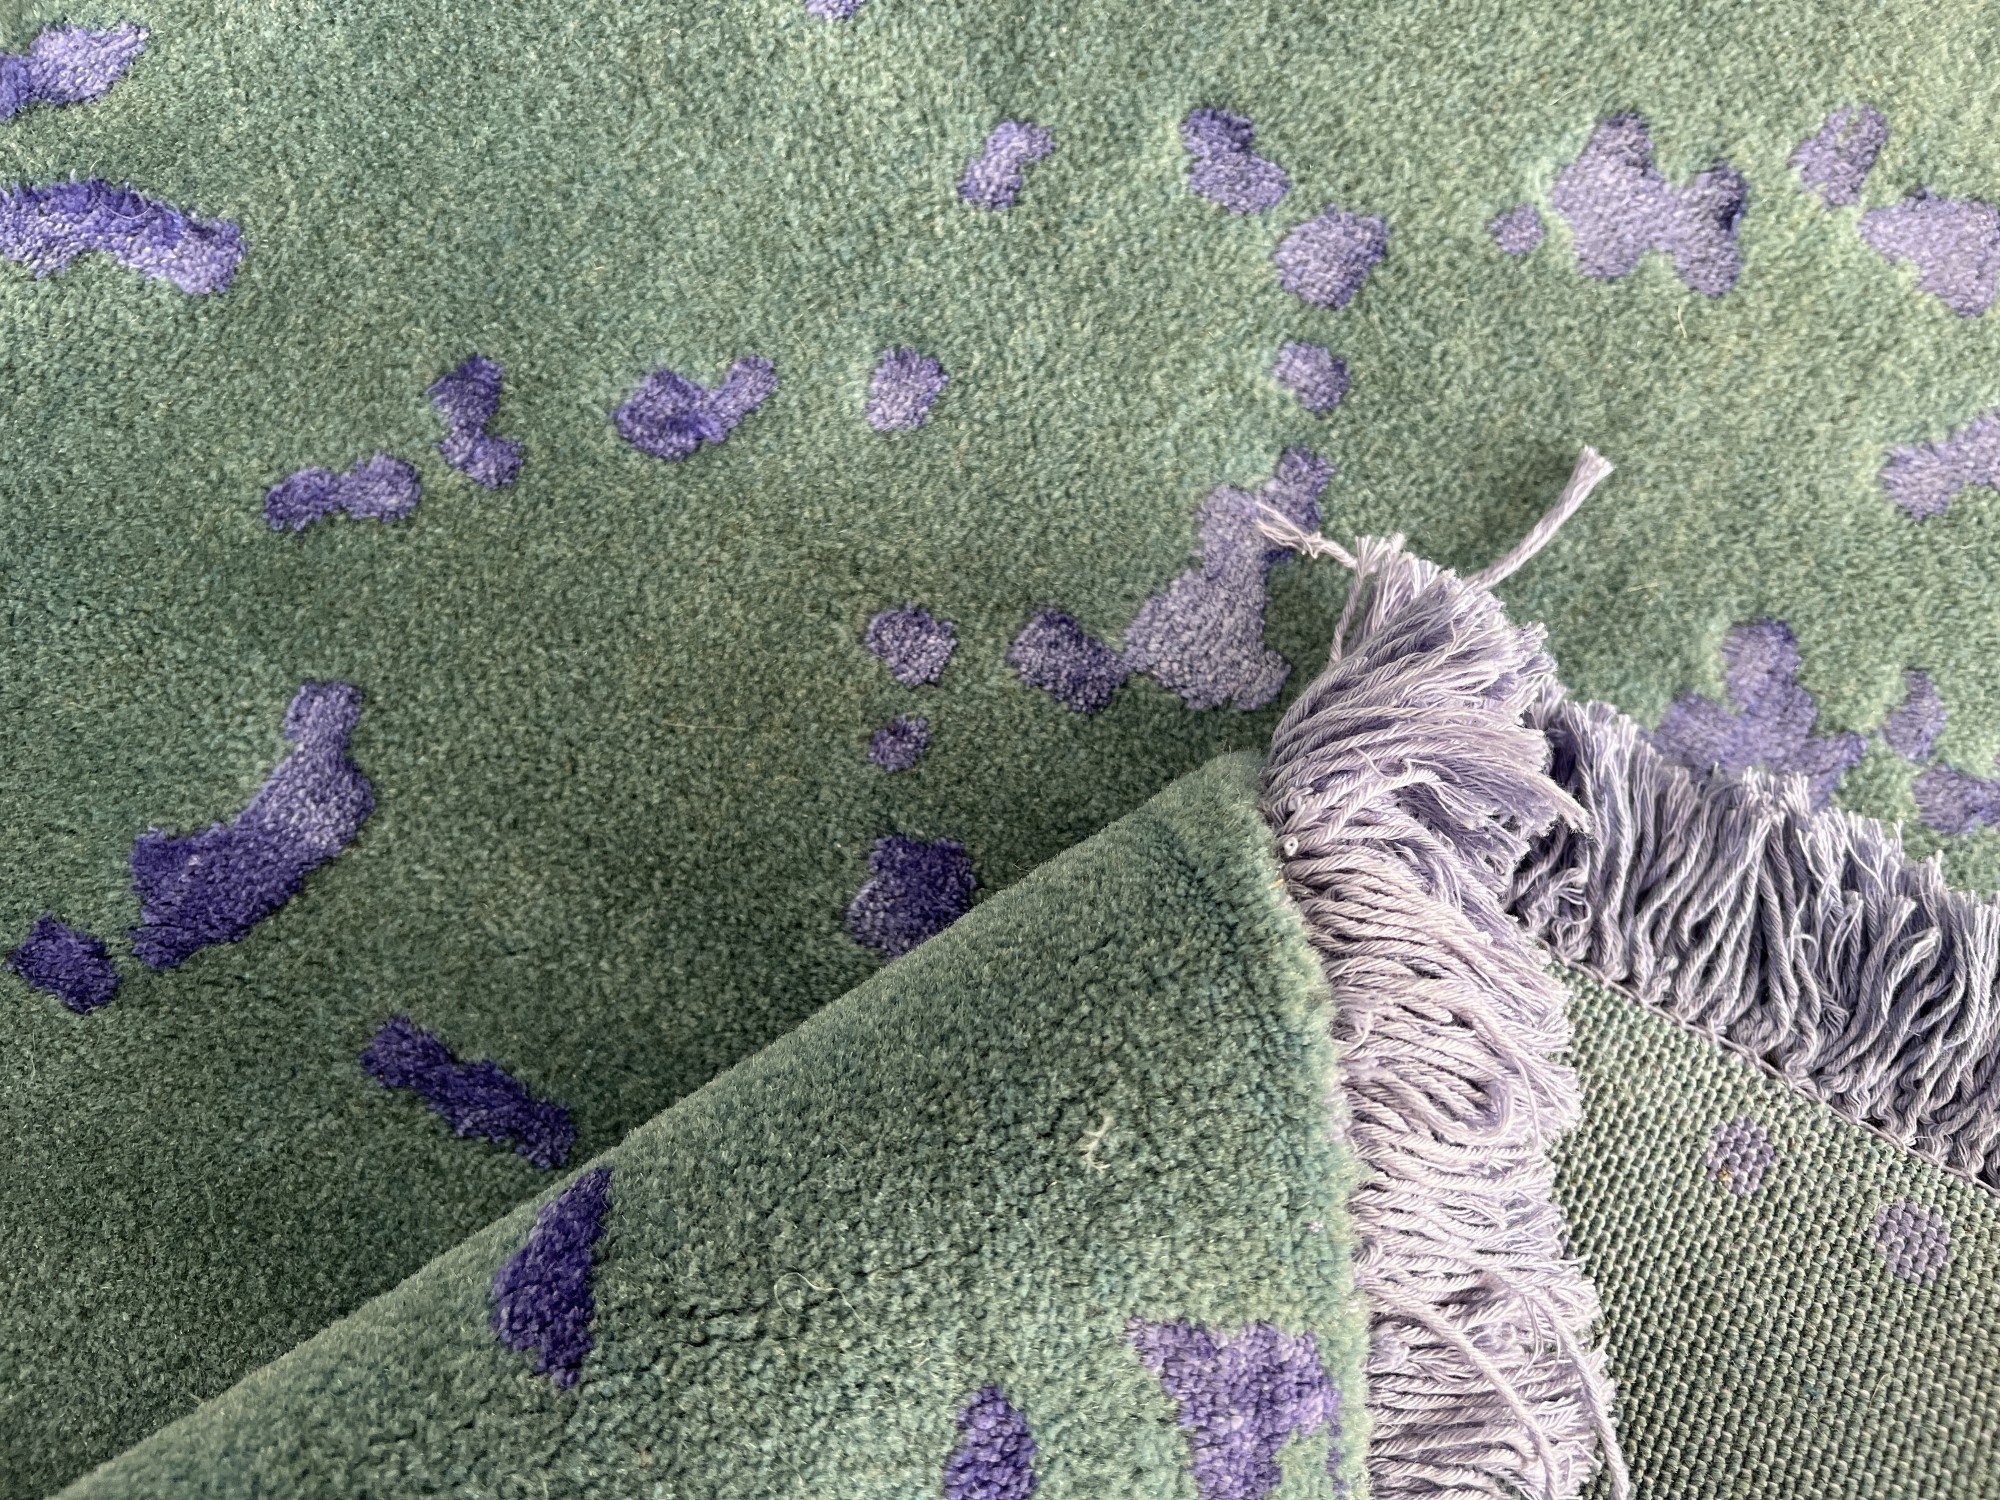 فرش پشمی ماشینی طبیعی و ارگانیک کد 0097 - زمینه سبز پر رنگ - حاشیه بنفش